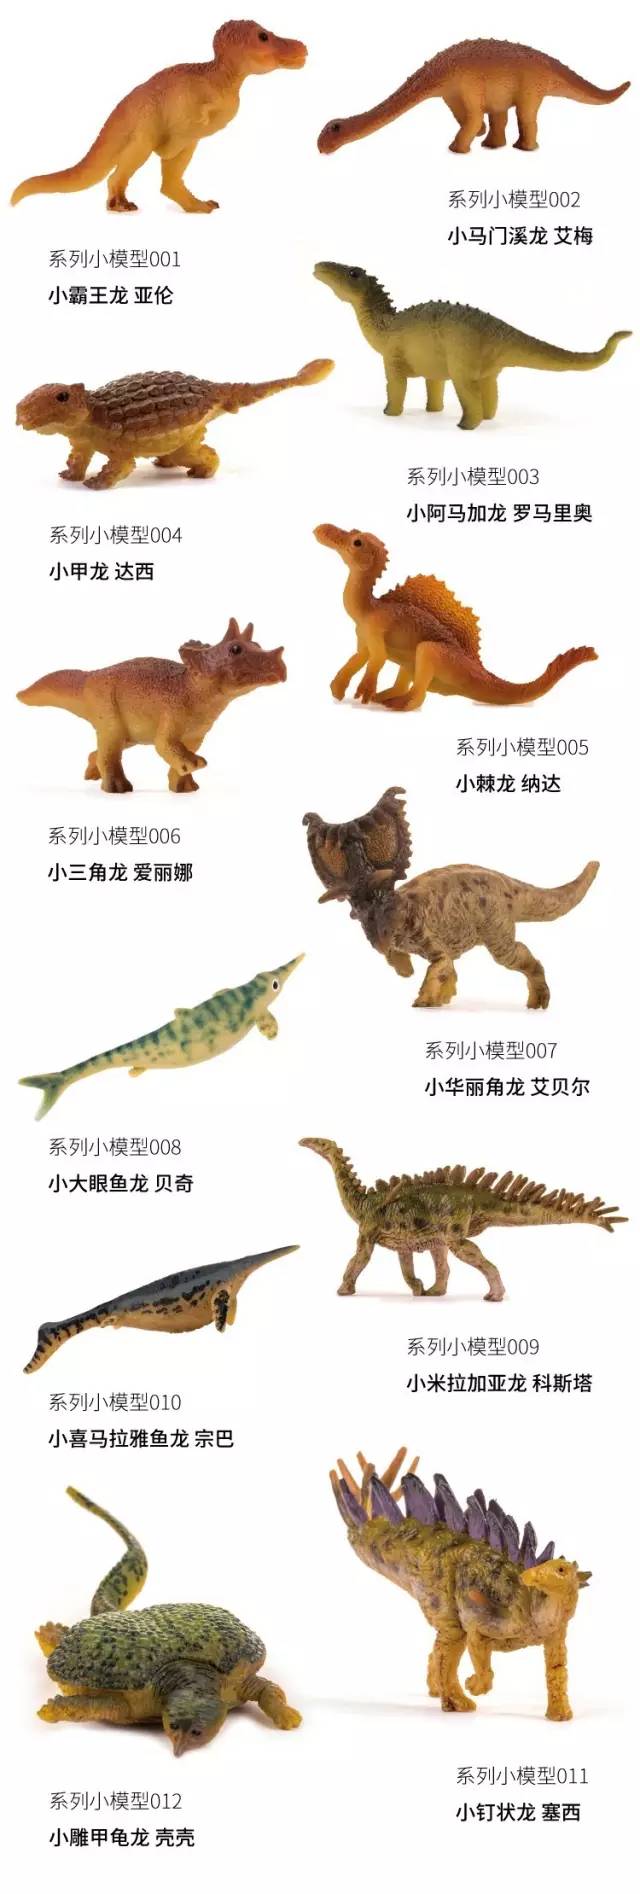 别具一格且极具艺术感的小恐龙模型,每一只小恐龙都有自己的专属名字